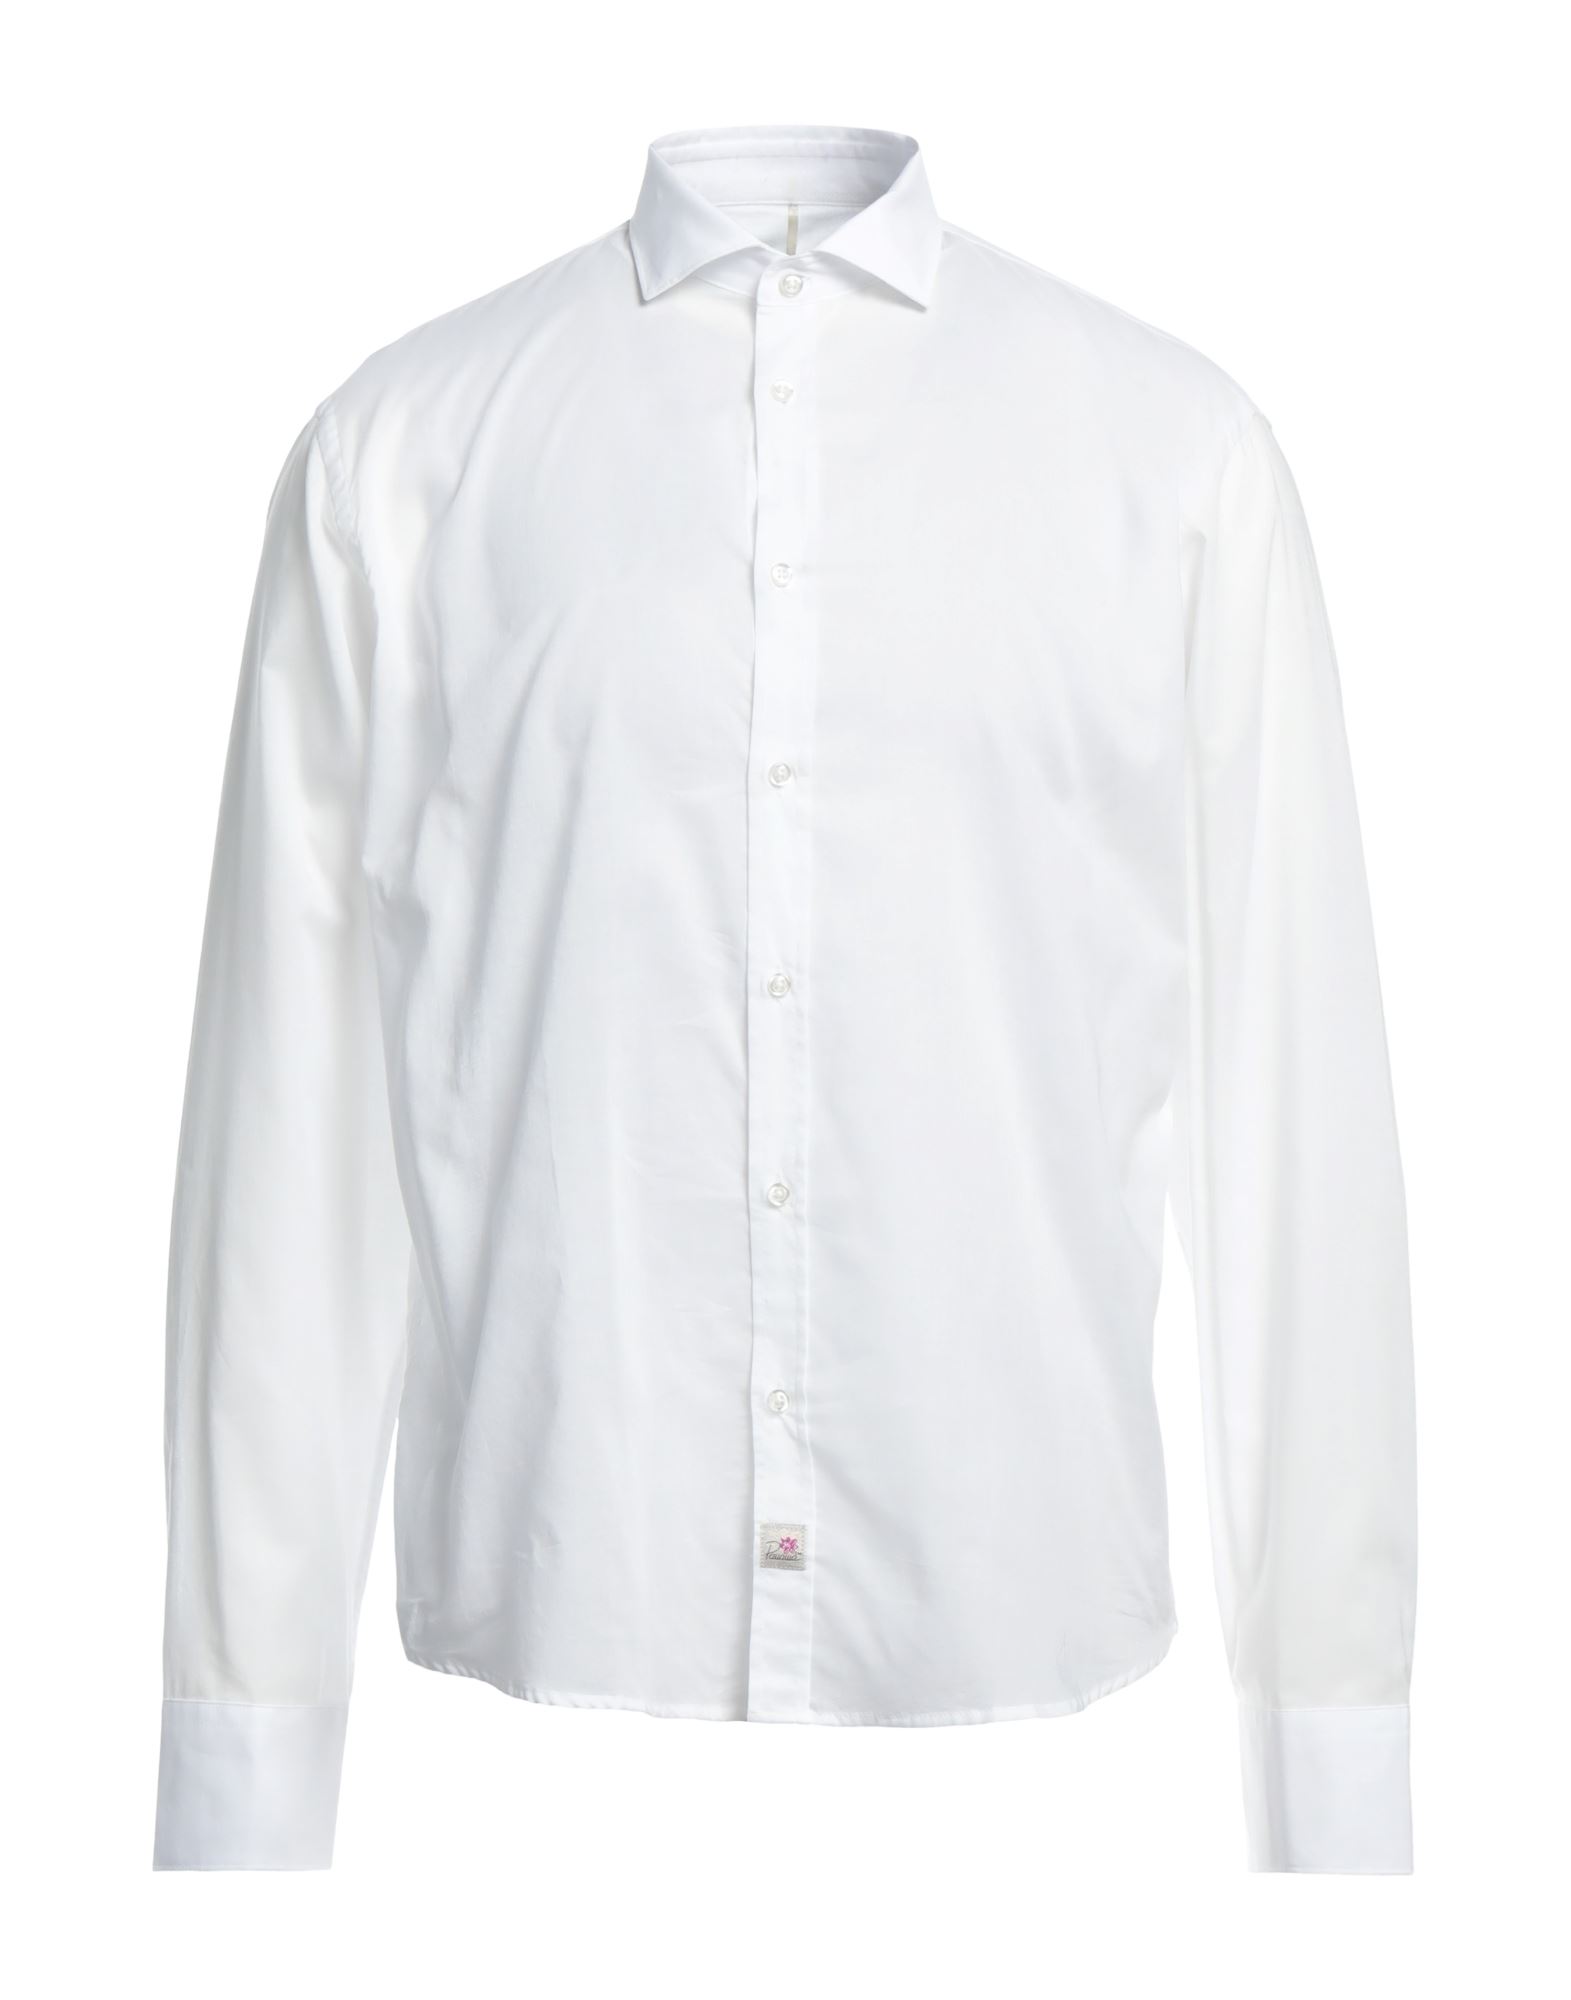 Panama Shirts In White